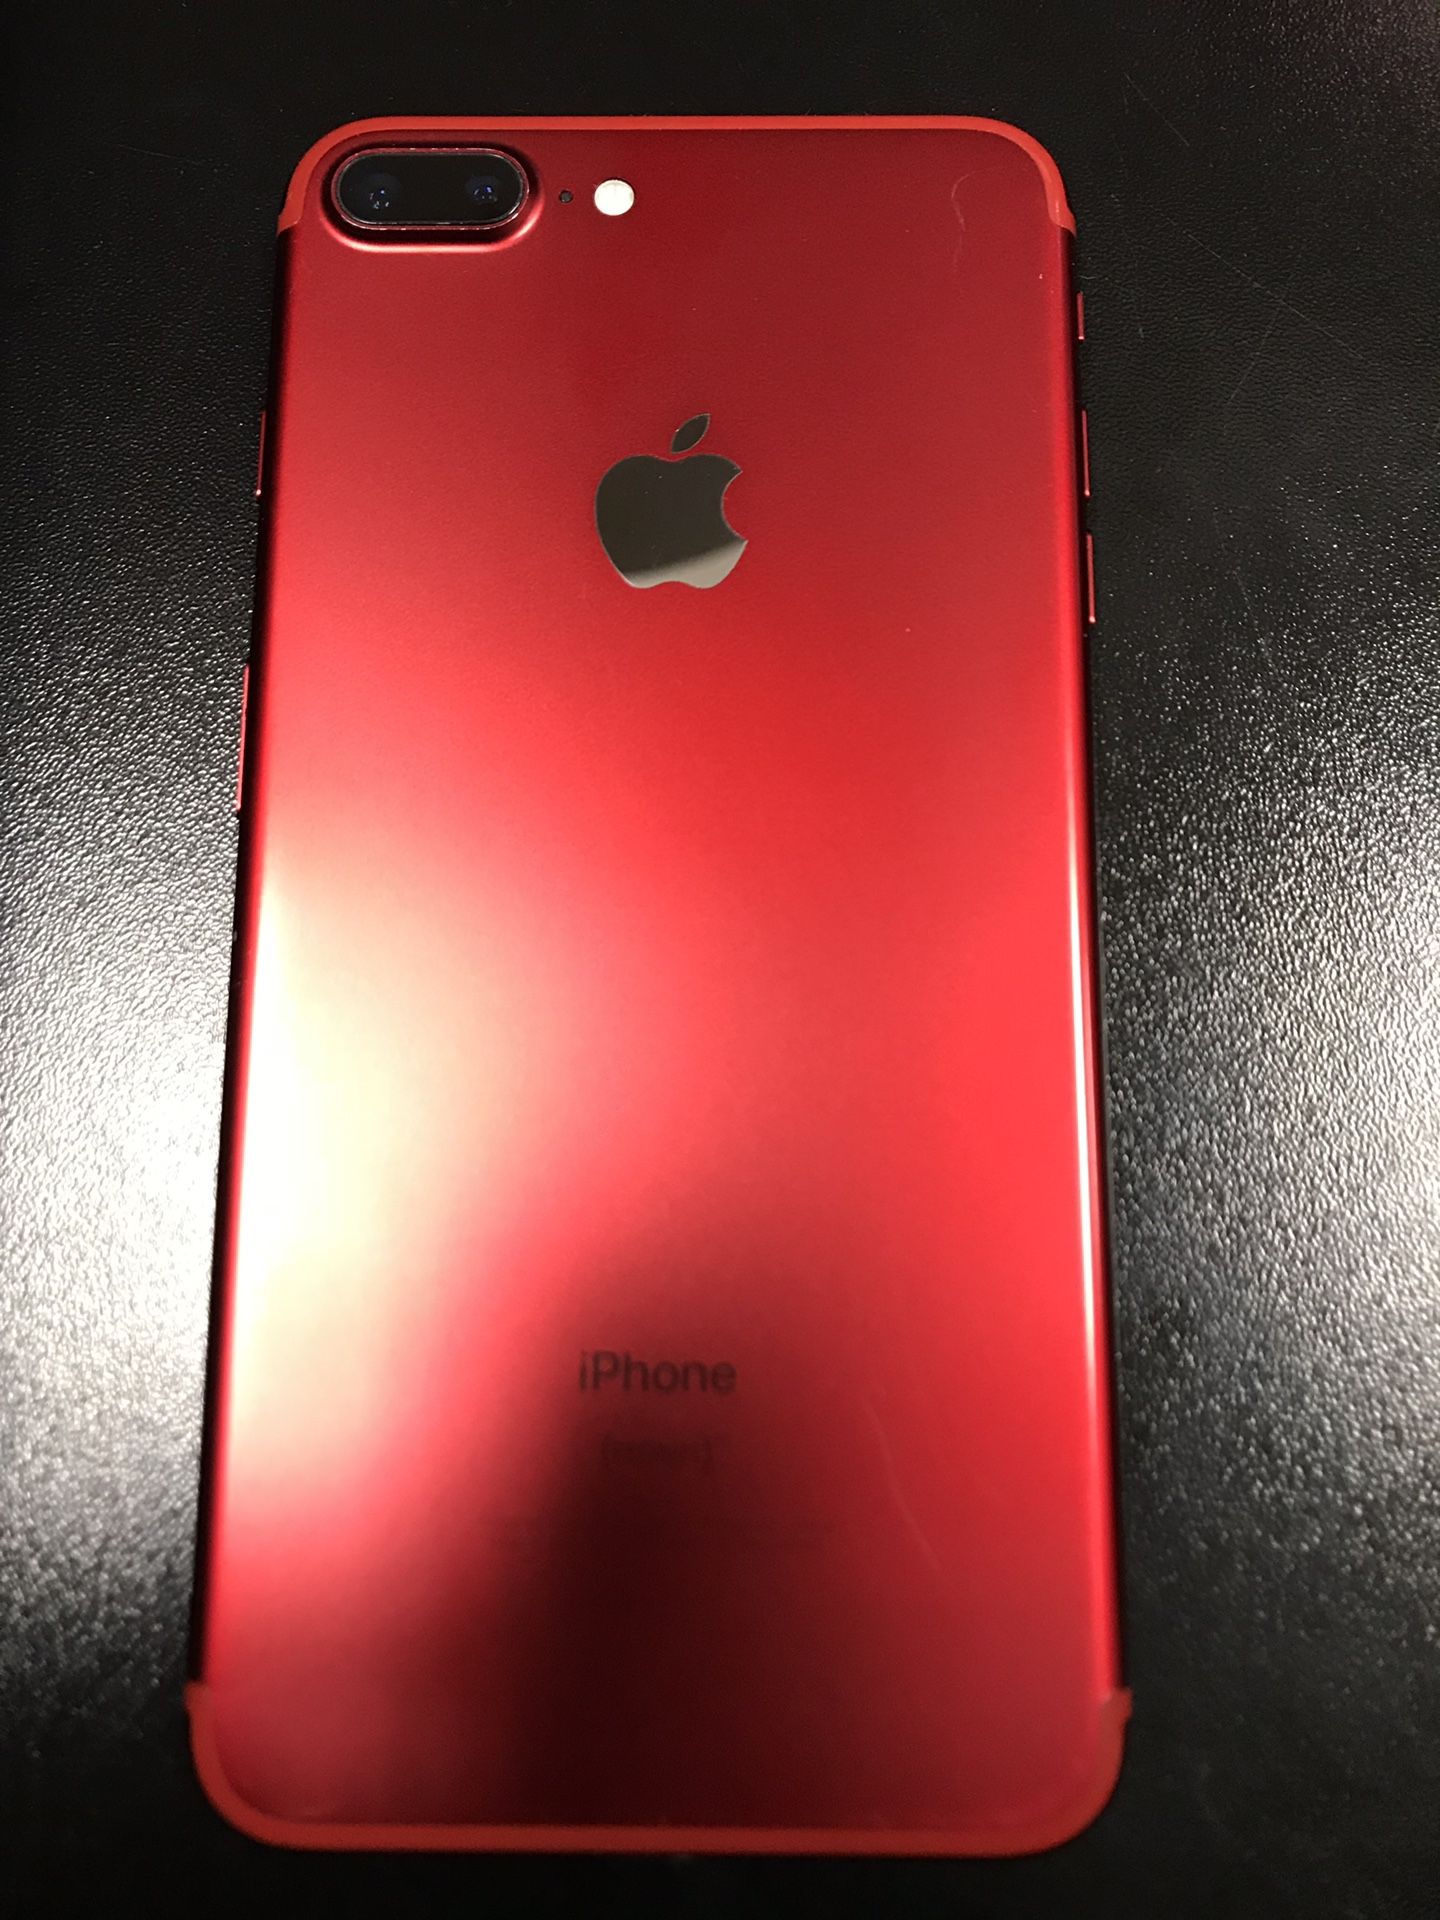 iPhone 7plus red